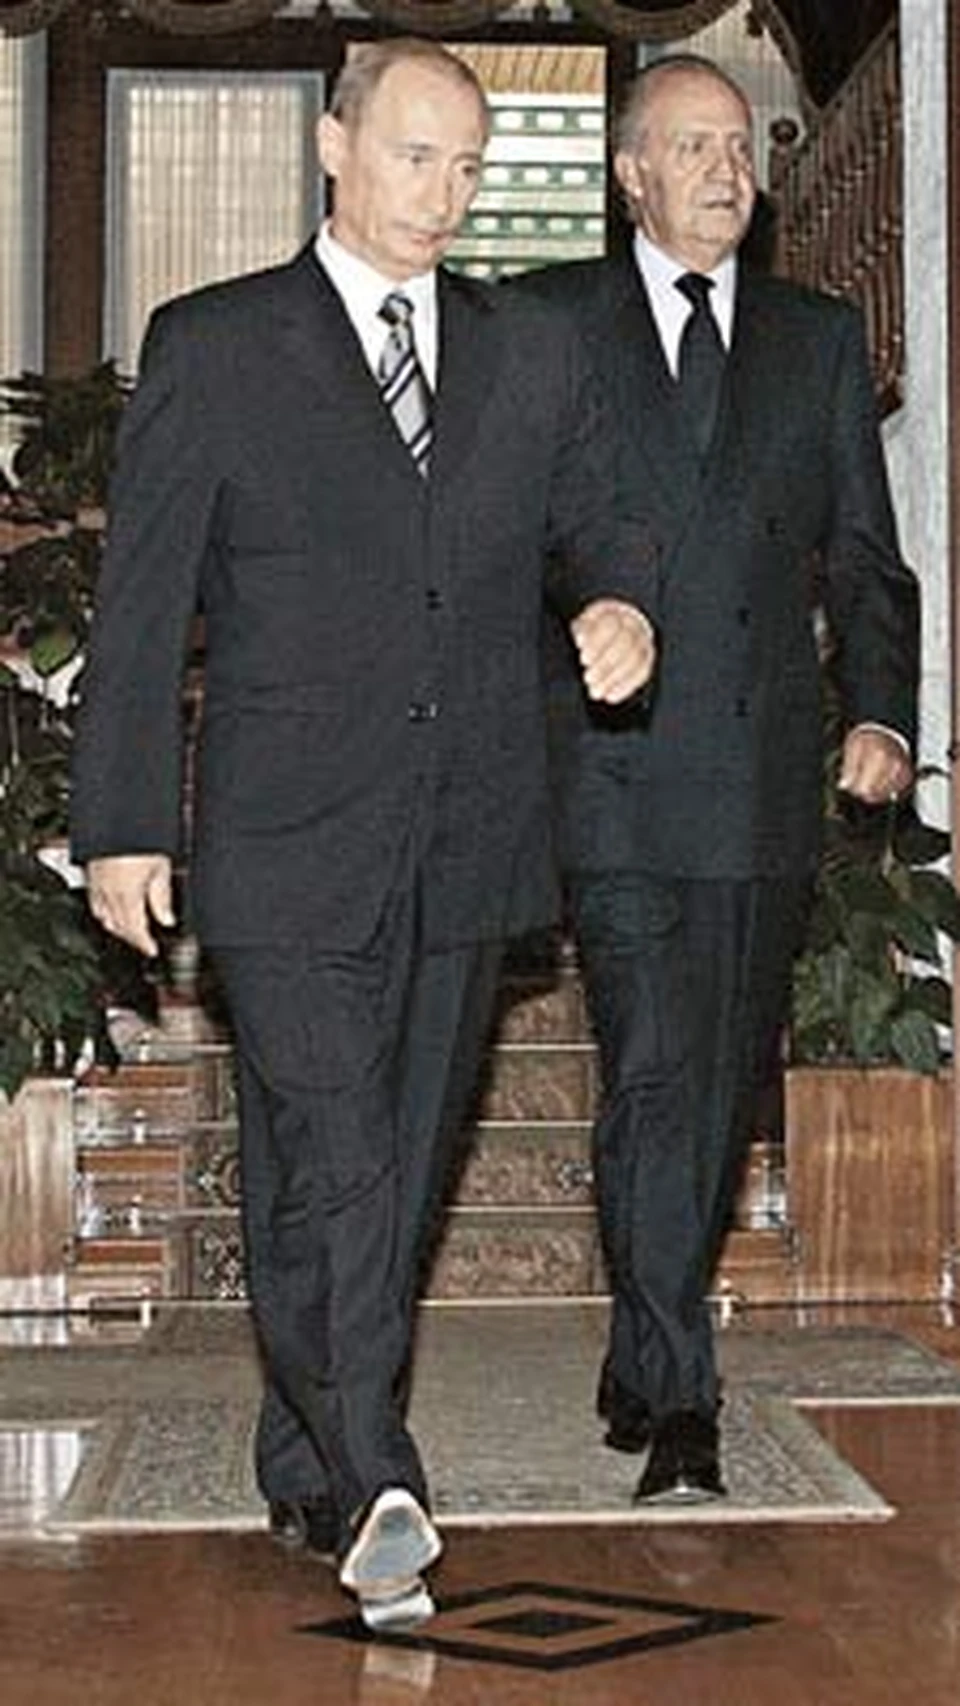 Несмотря на сочинскую жару, Путин и Хуан Карлос в день траура облачились в строгие костюмы.